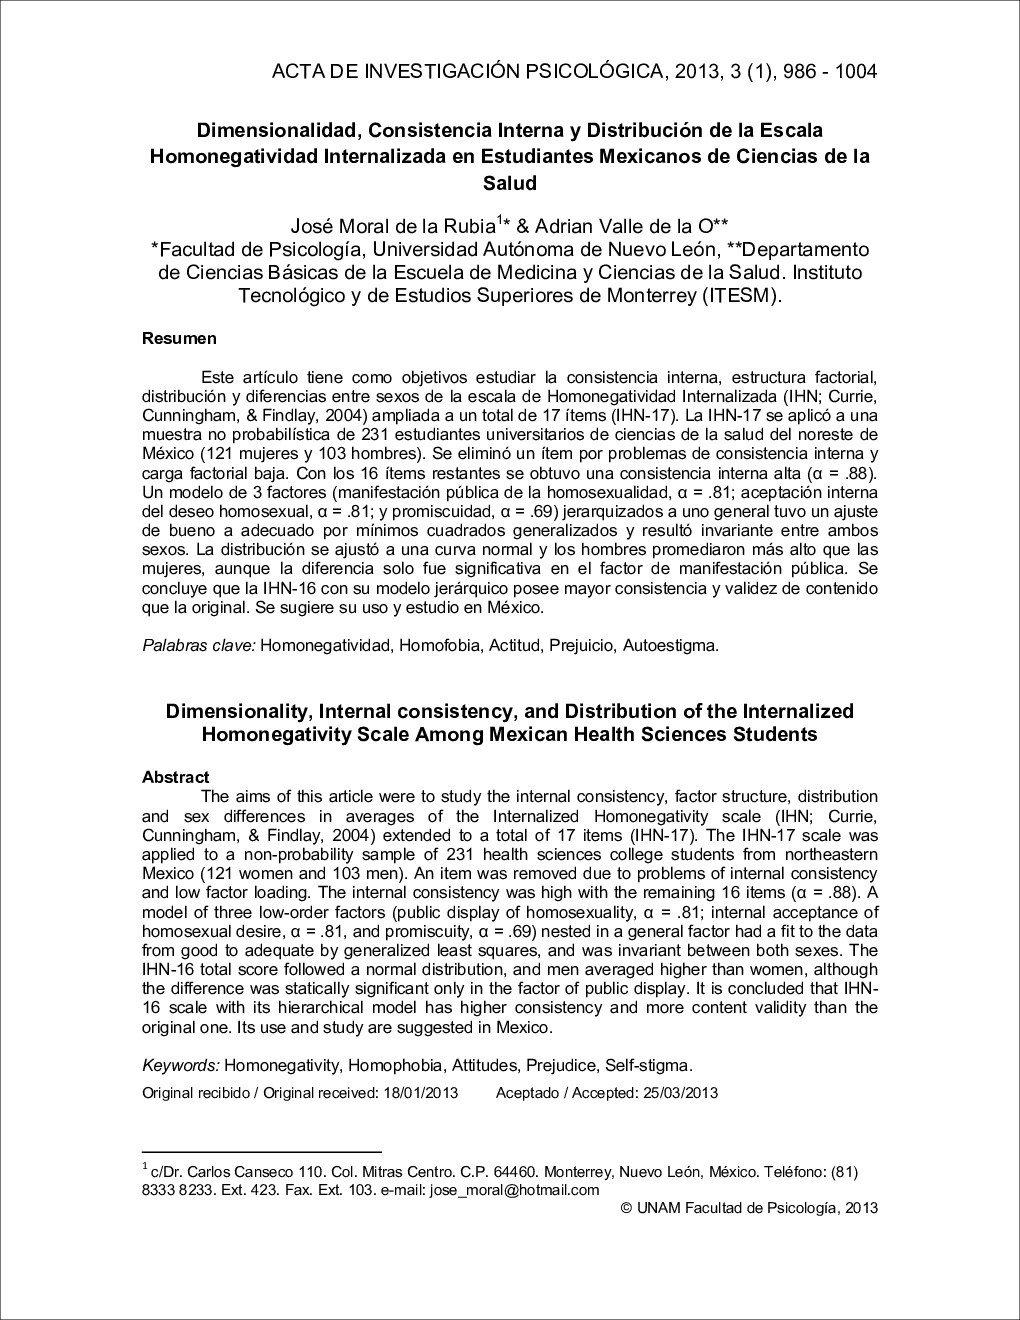 Dimensionalidad, Consistencia Interna y Distribución de la Escala Homonegatividad Internalizada en Estudiantes Mexicanos de Ciencias de la Salud